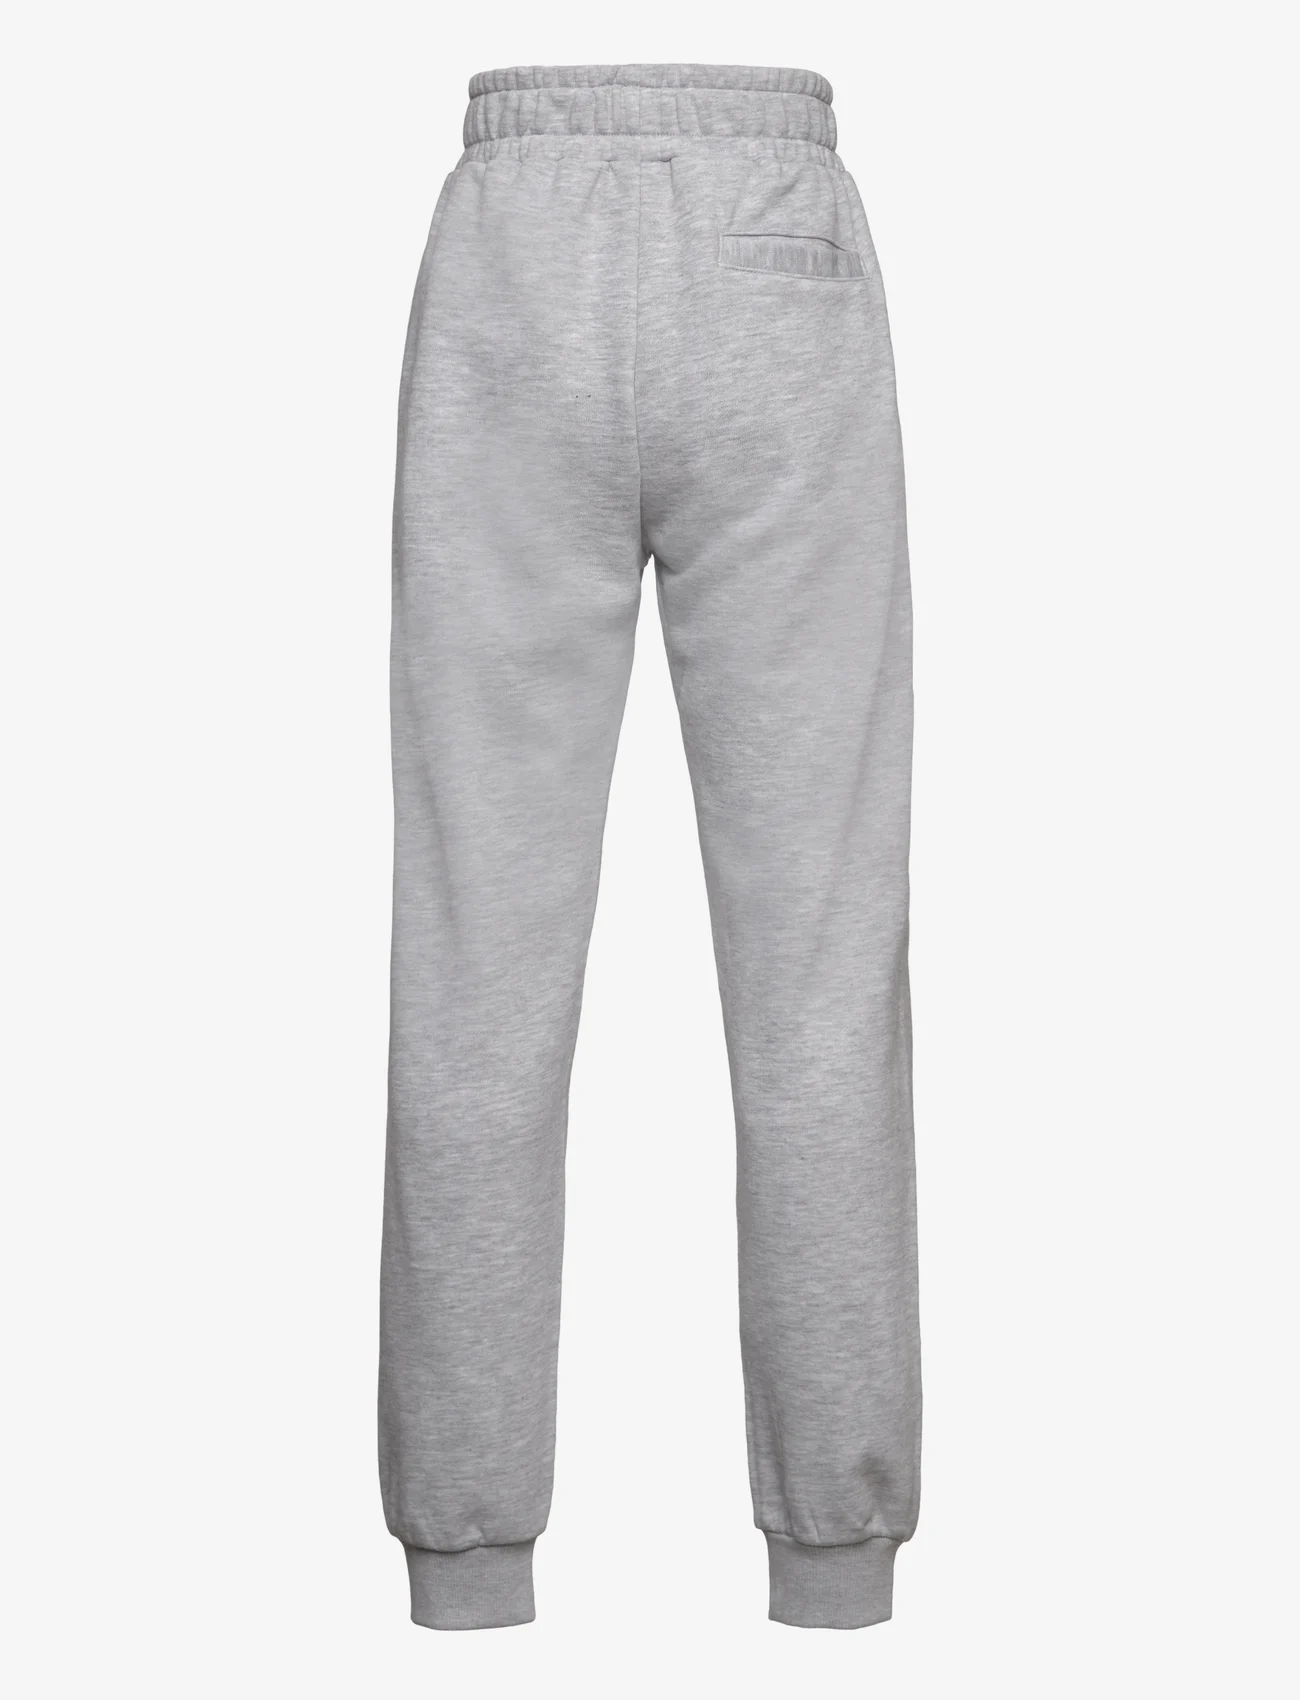 FILA - BLANKENHAIN track pants - sports bottoms - light grey melange - 1